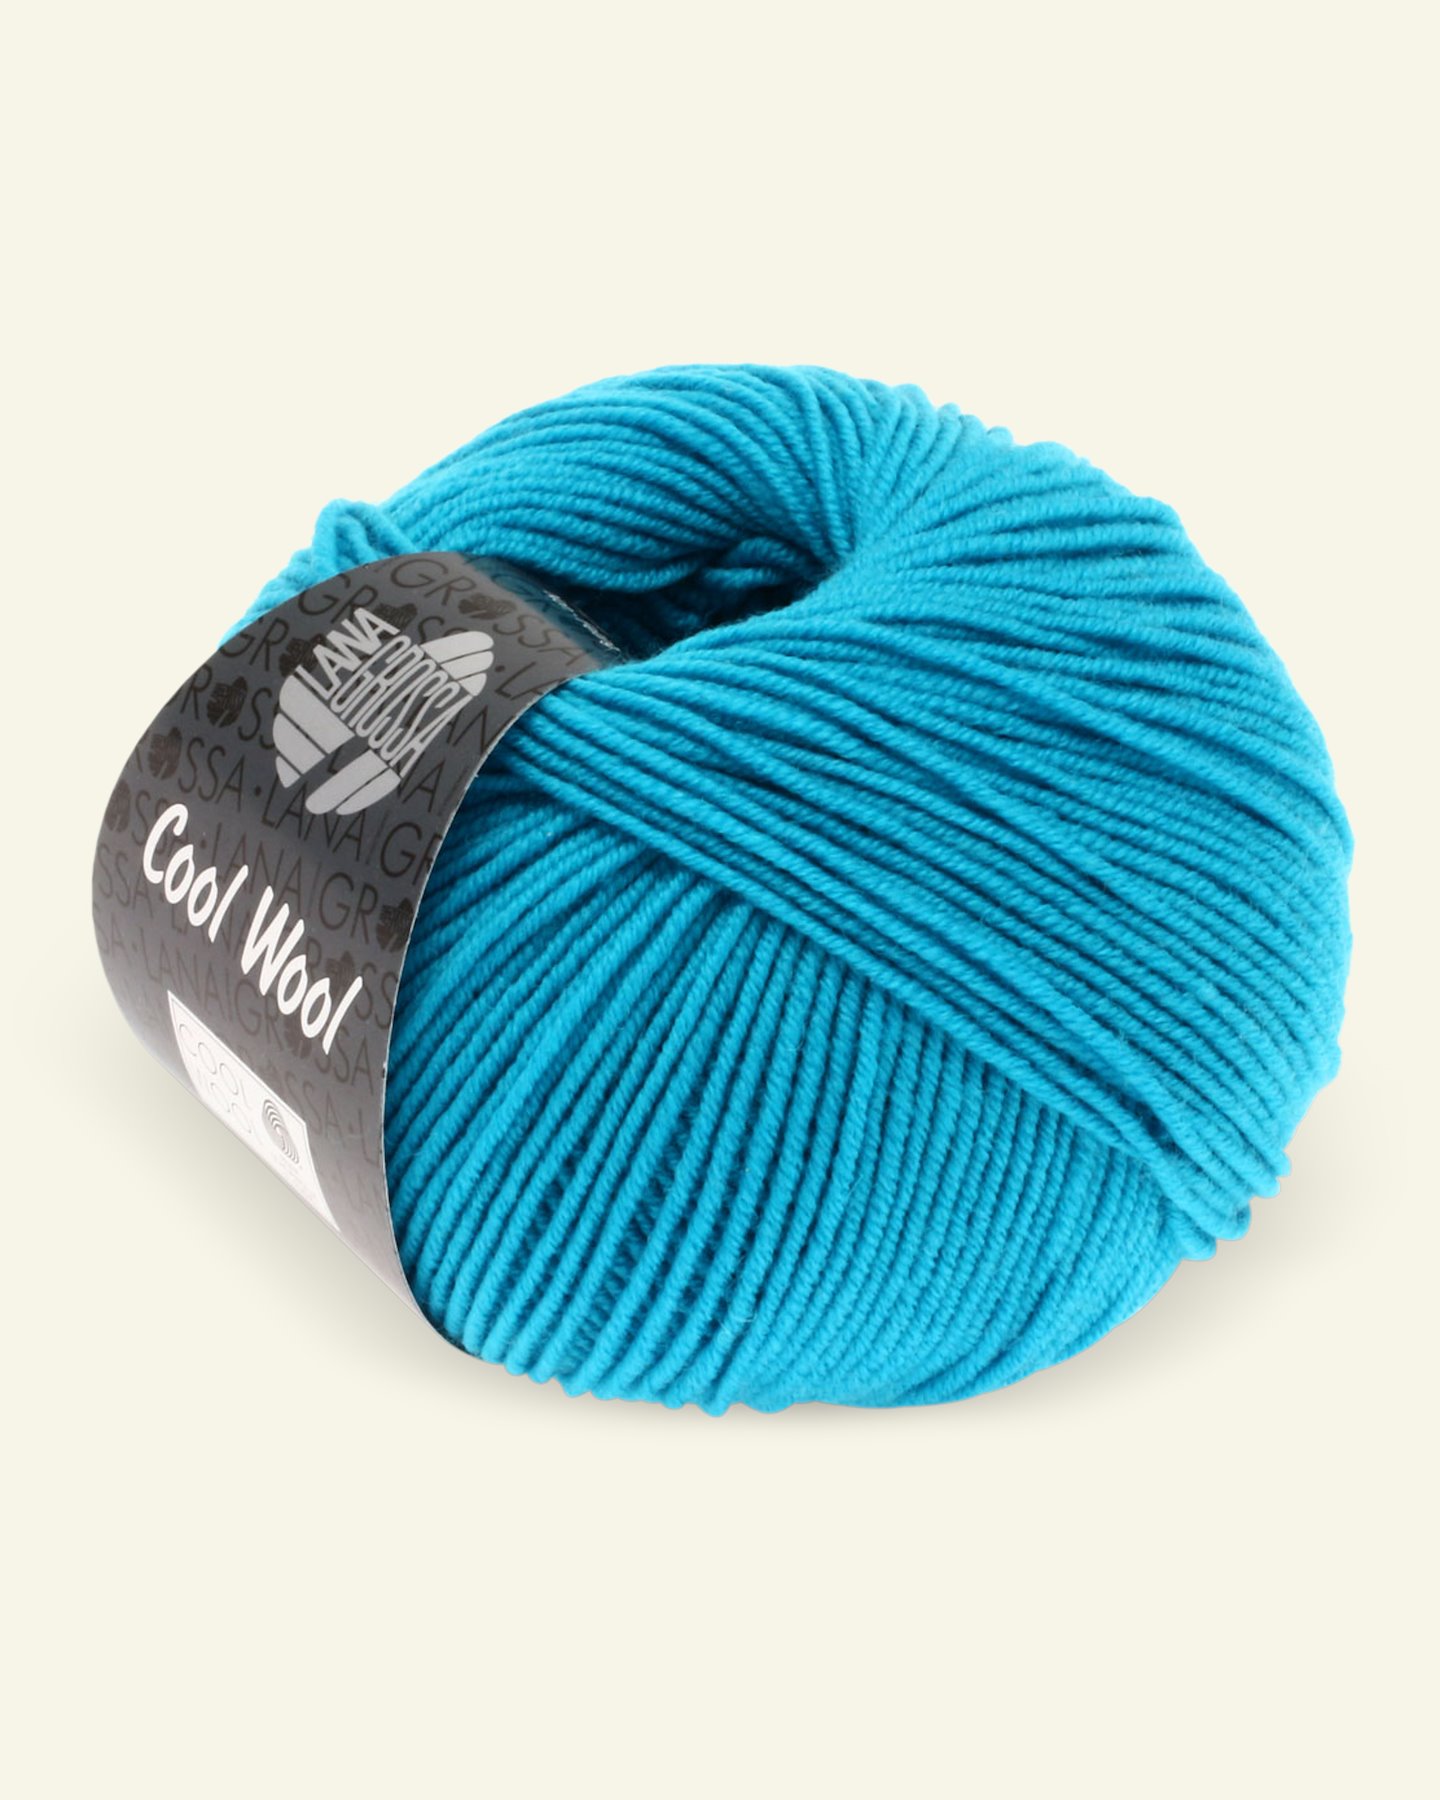 Lana Grossa, extrafine merino wool yarn "Cool Wool", dark turquoise 90001124_pack